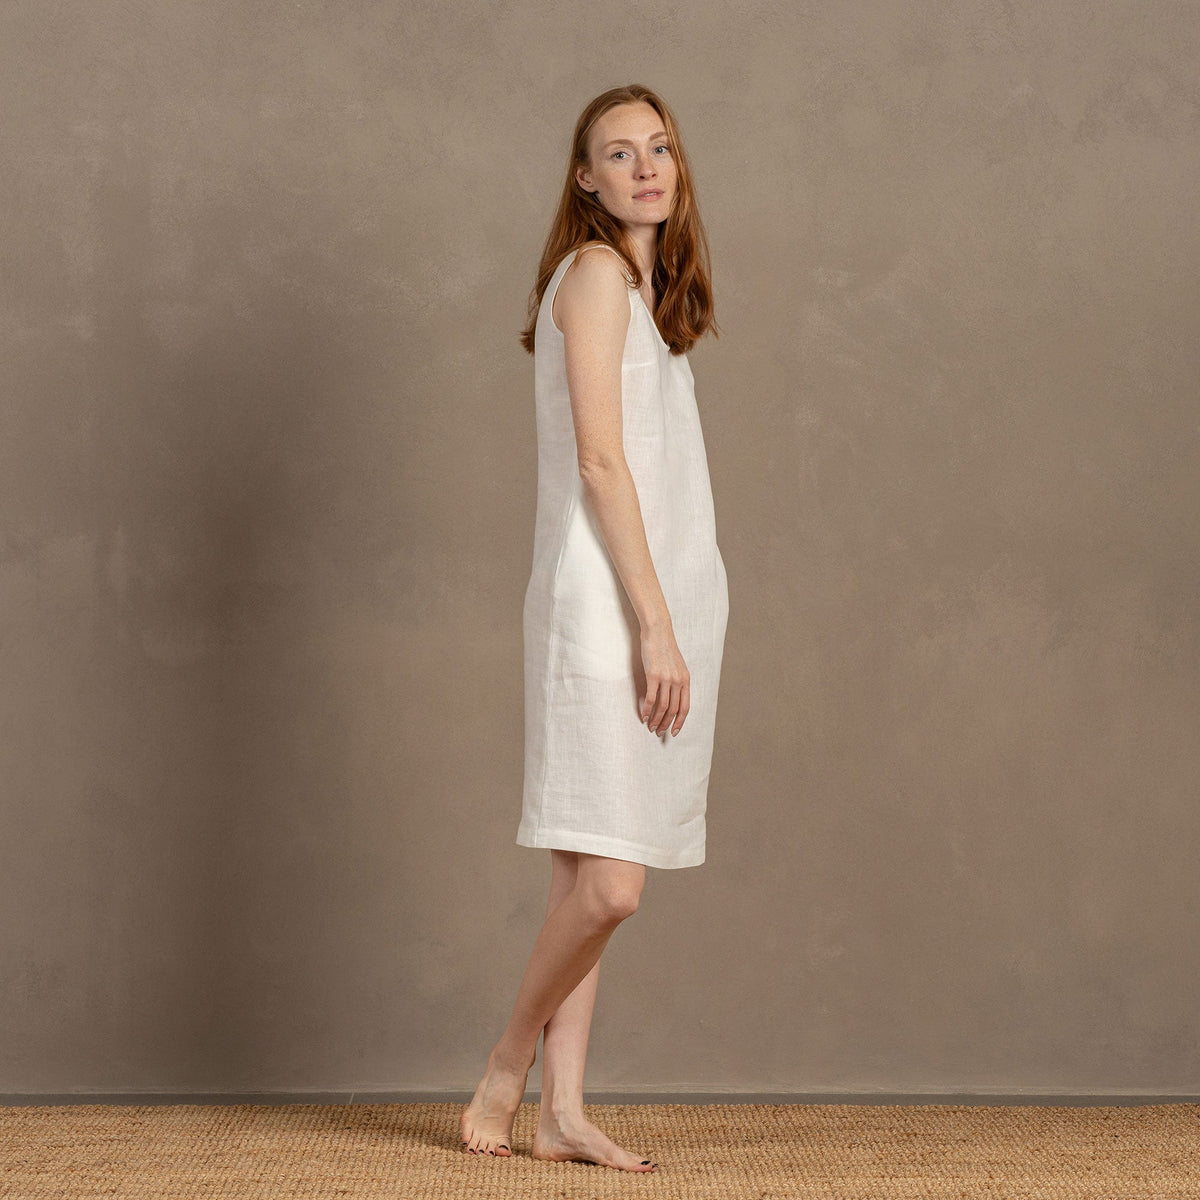 MENIQUE 100% Linen Dress July